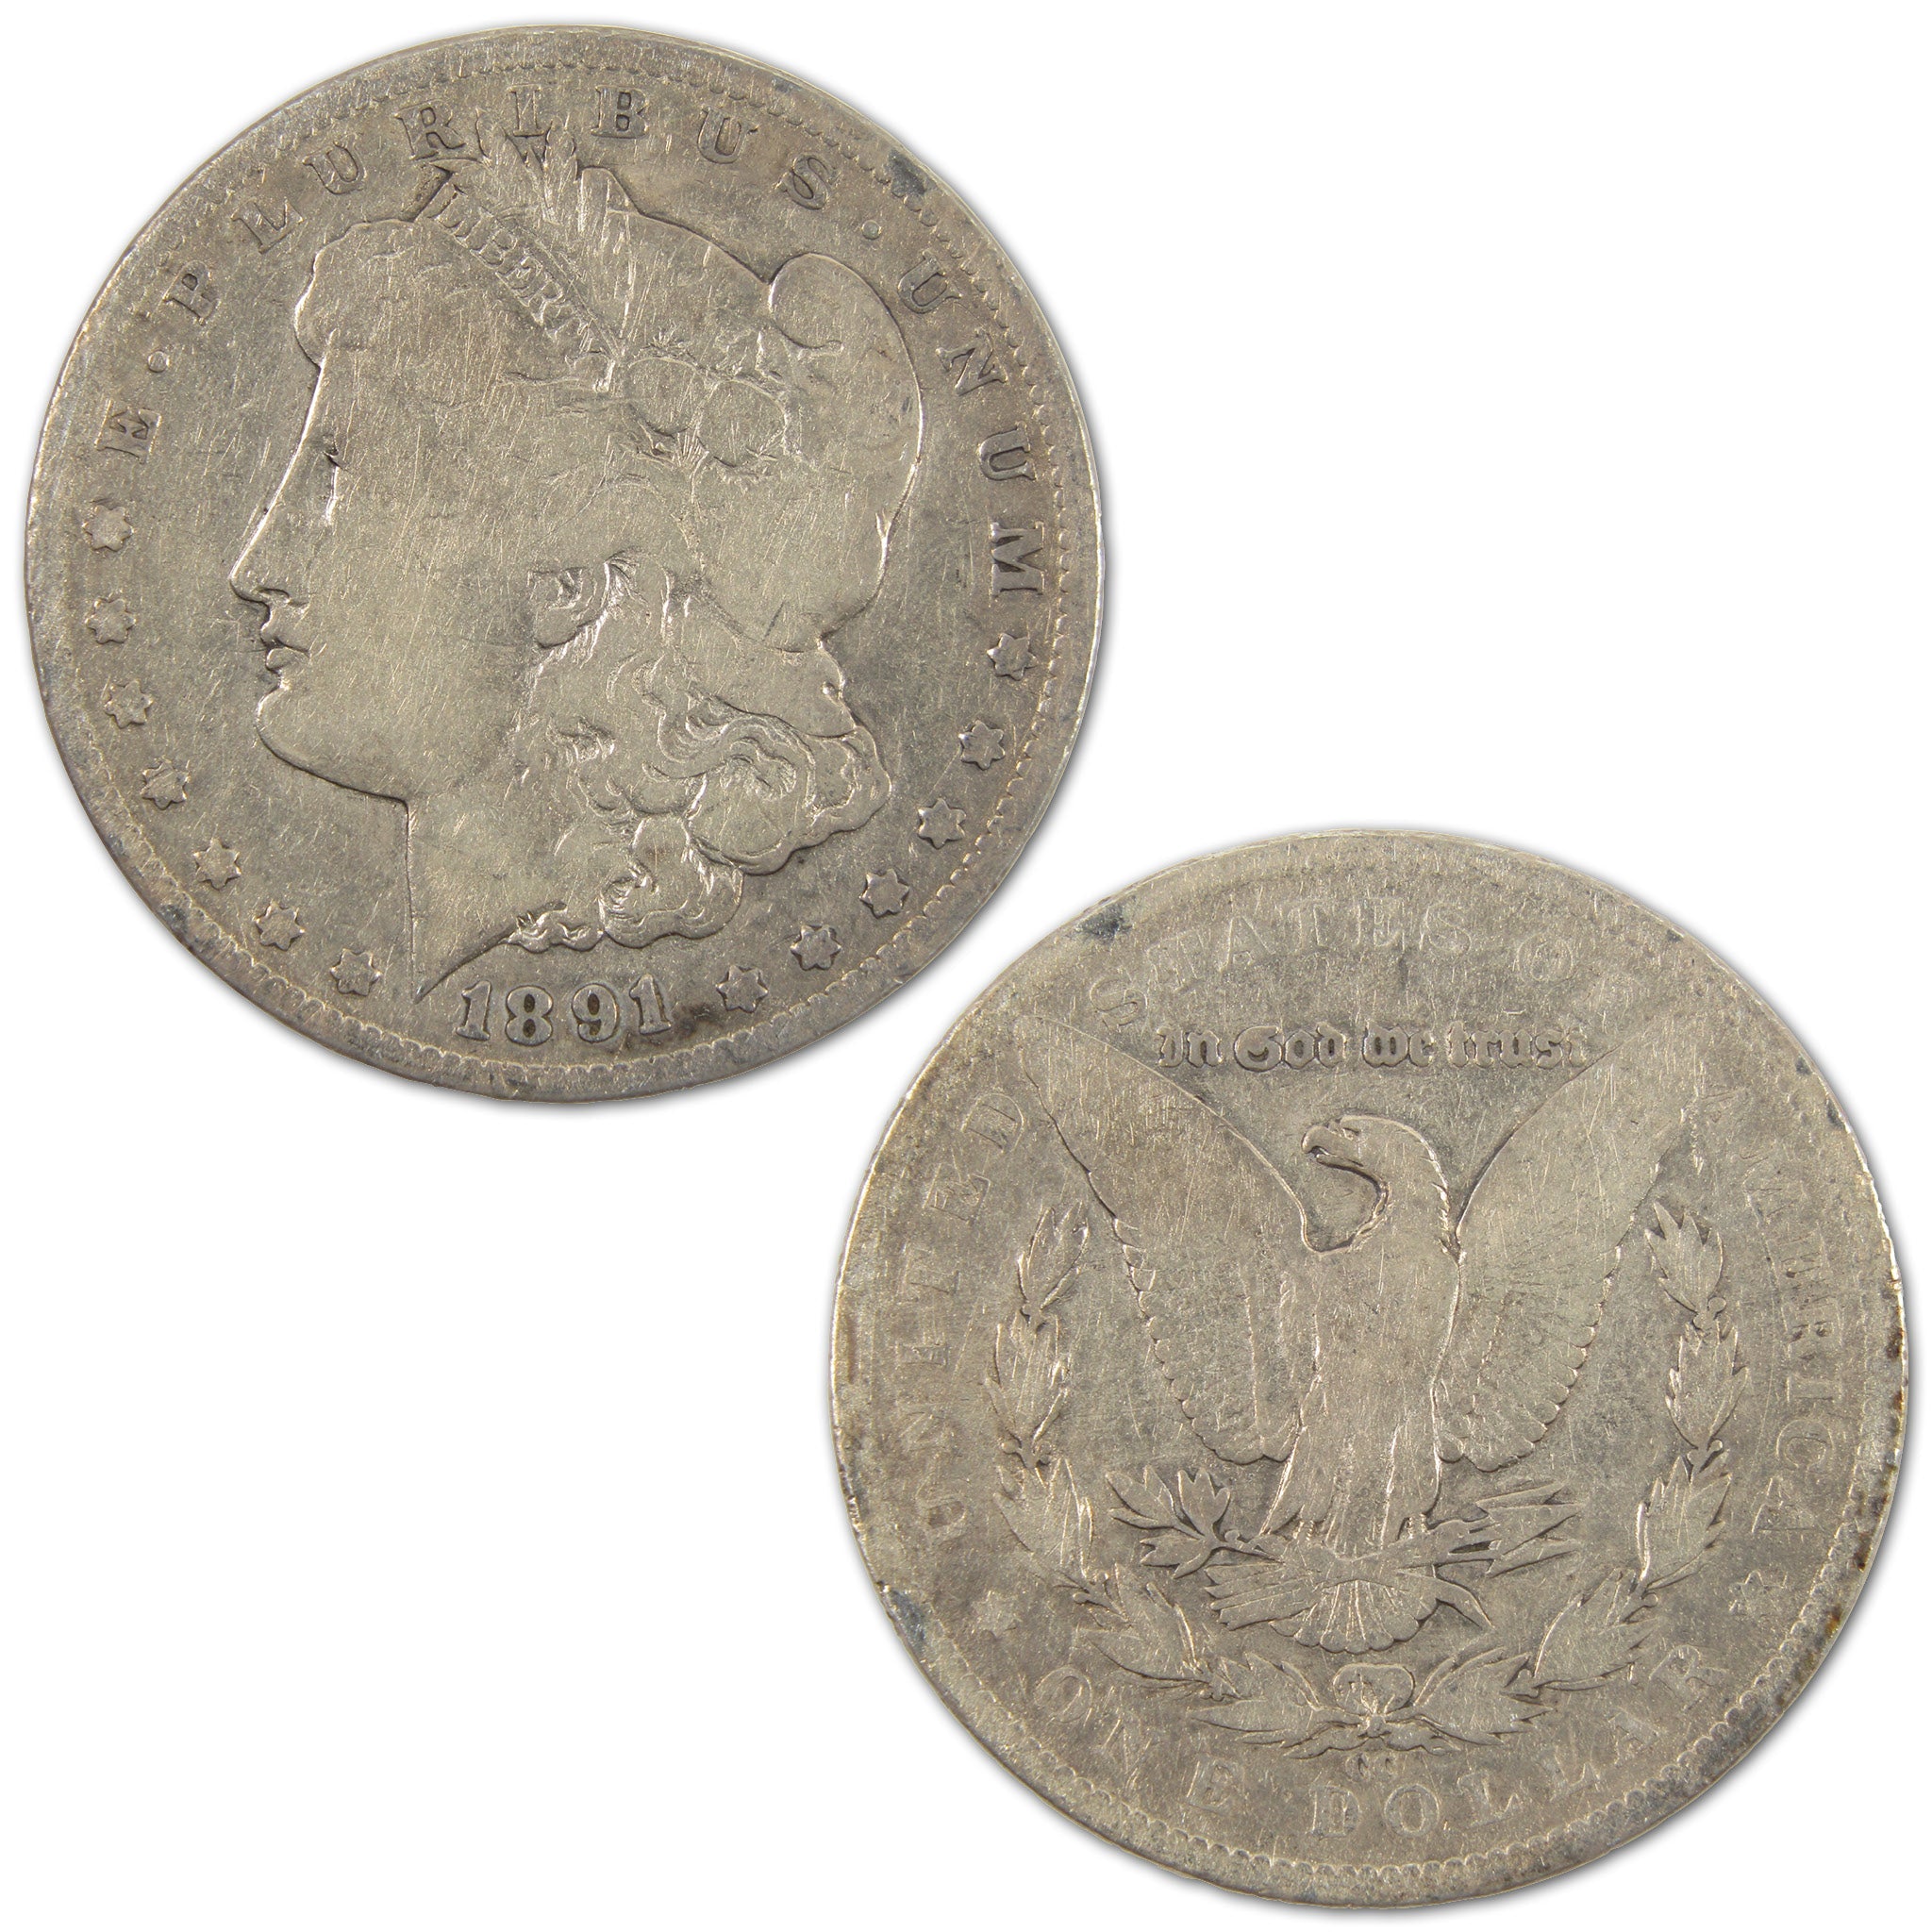 1891 CC Morgan Dollar Silver $1 Coin SKU:I10866 - Morgan coin - Morgan silver dollar - Morgan silver dollar for sale - Profile Coins &amp; Collectibles